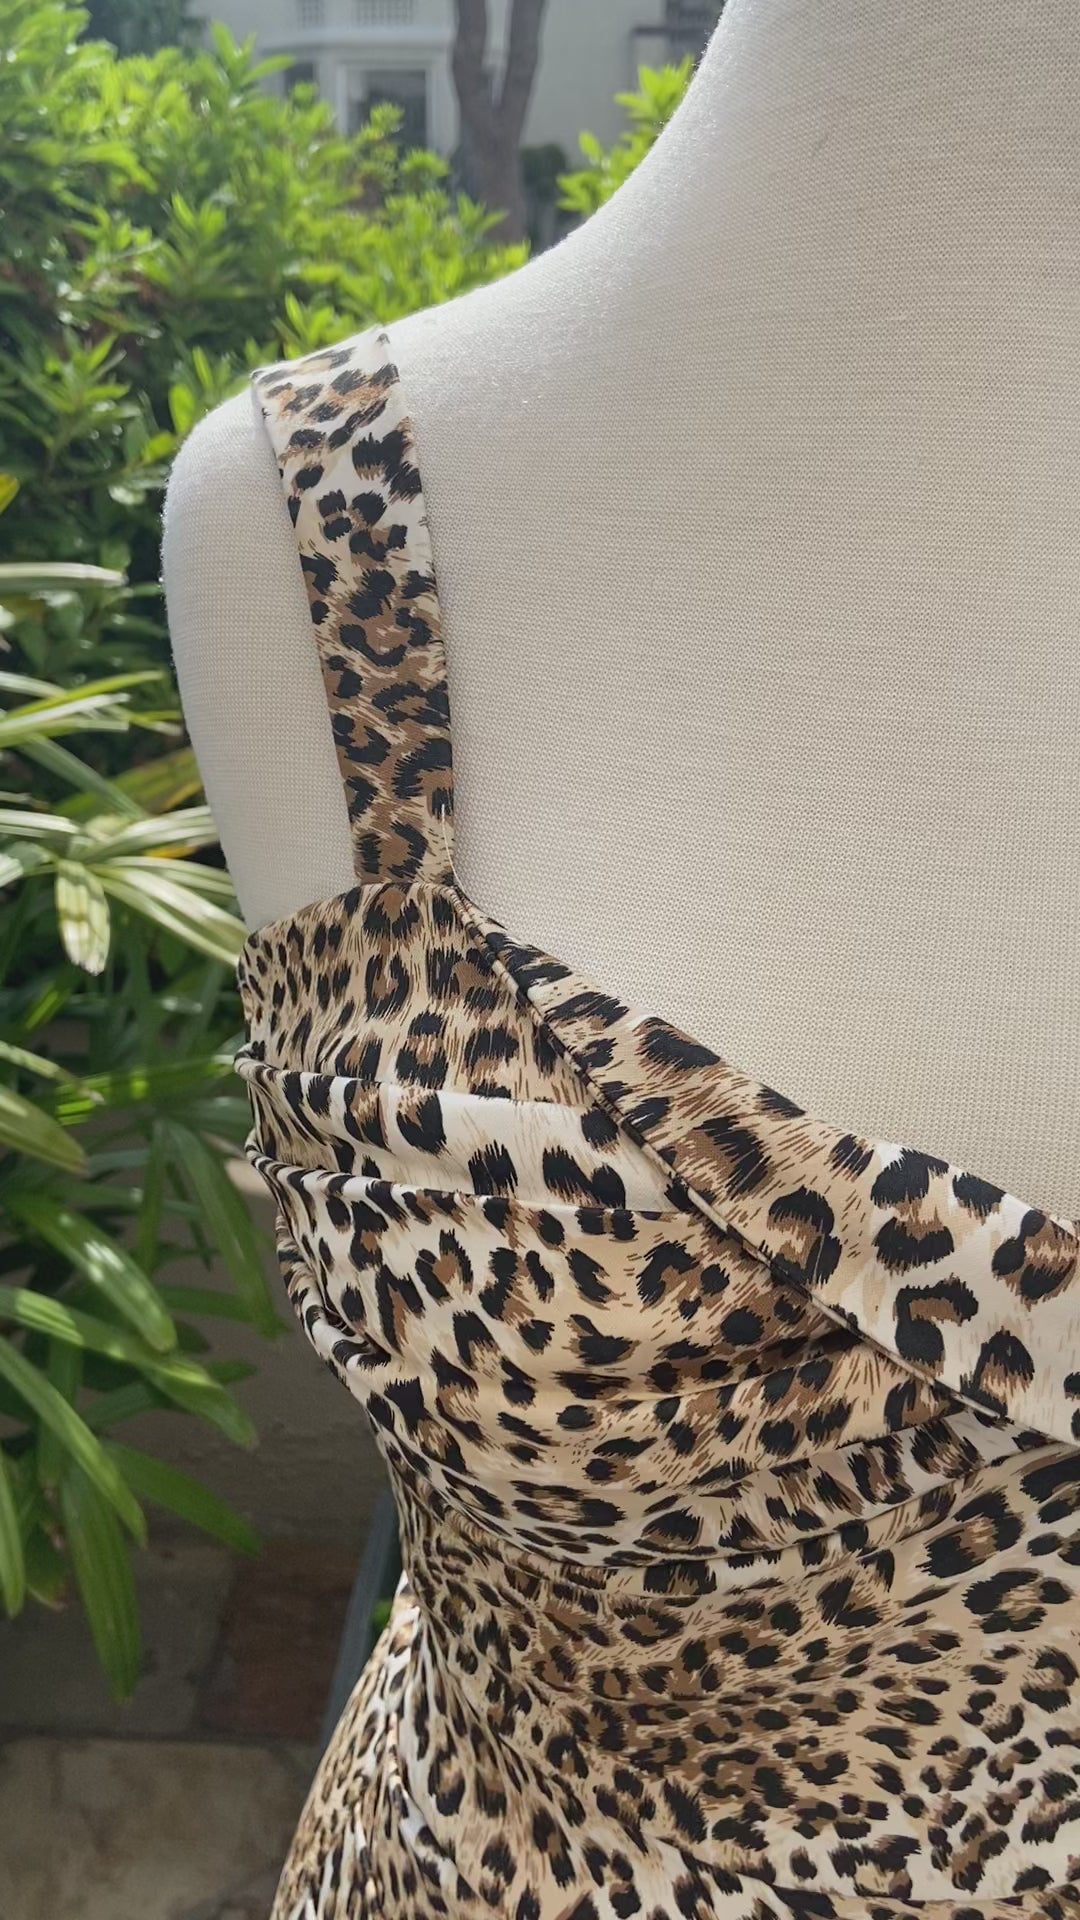 Leopard Dress by Just Add Heels